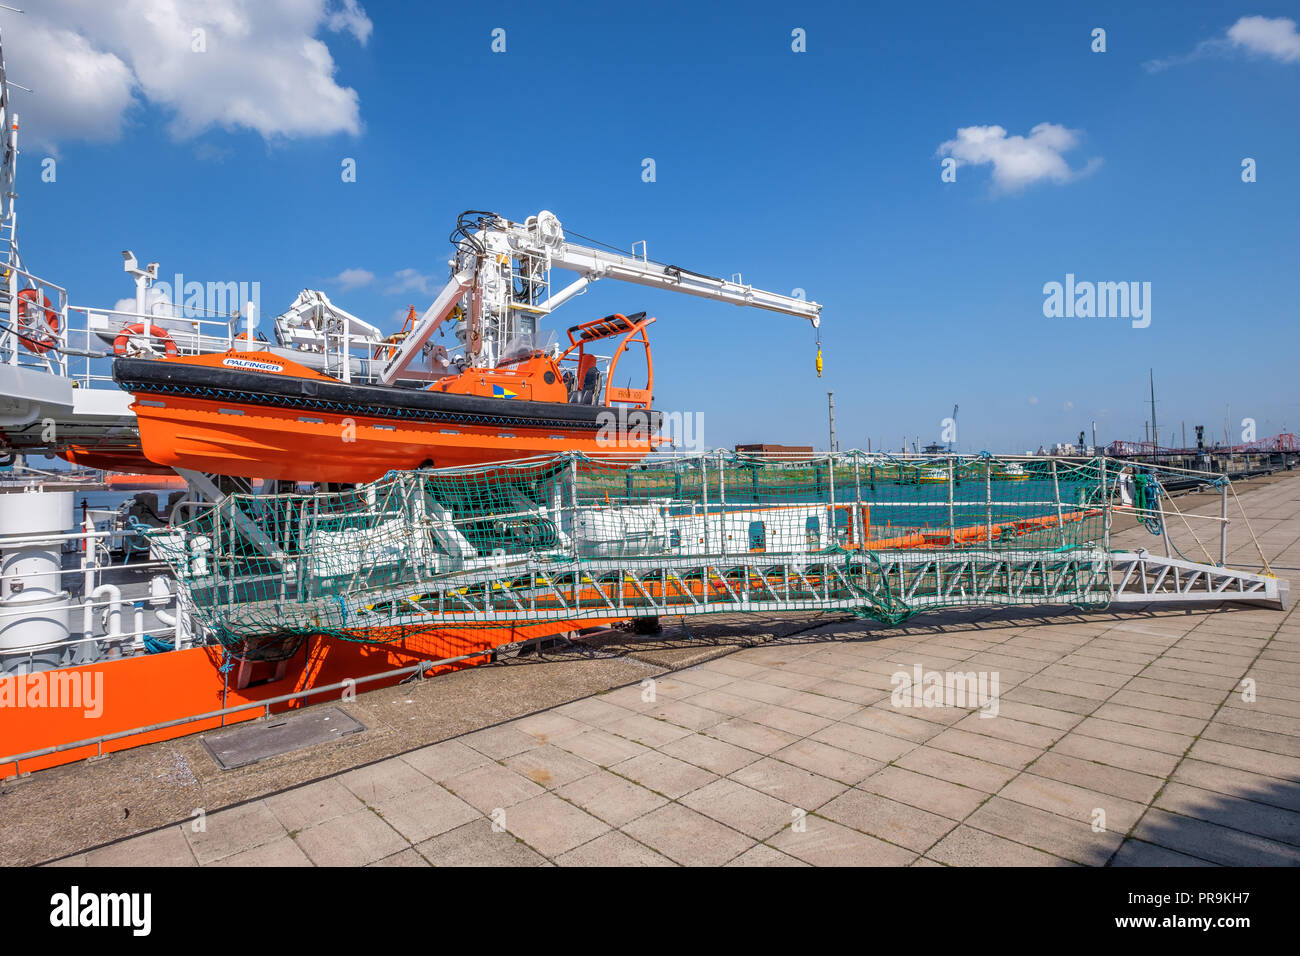 Un motore di colore arancione sloop pende sul lato della nave e la passerella è sulla banchina. Foto Stock